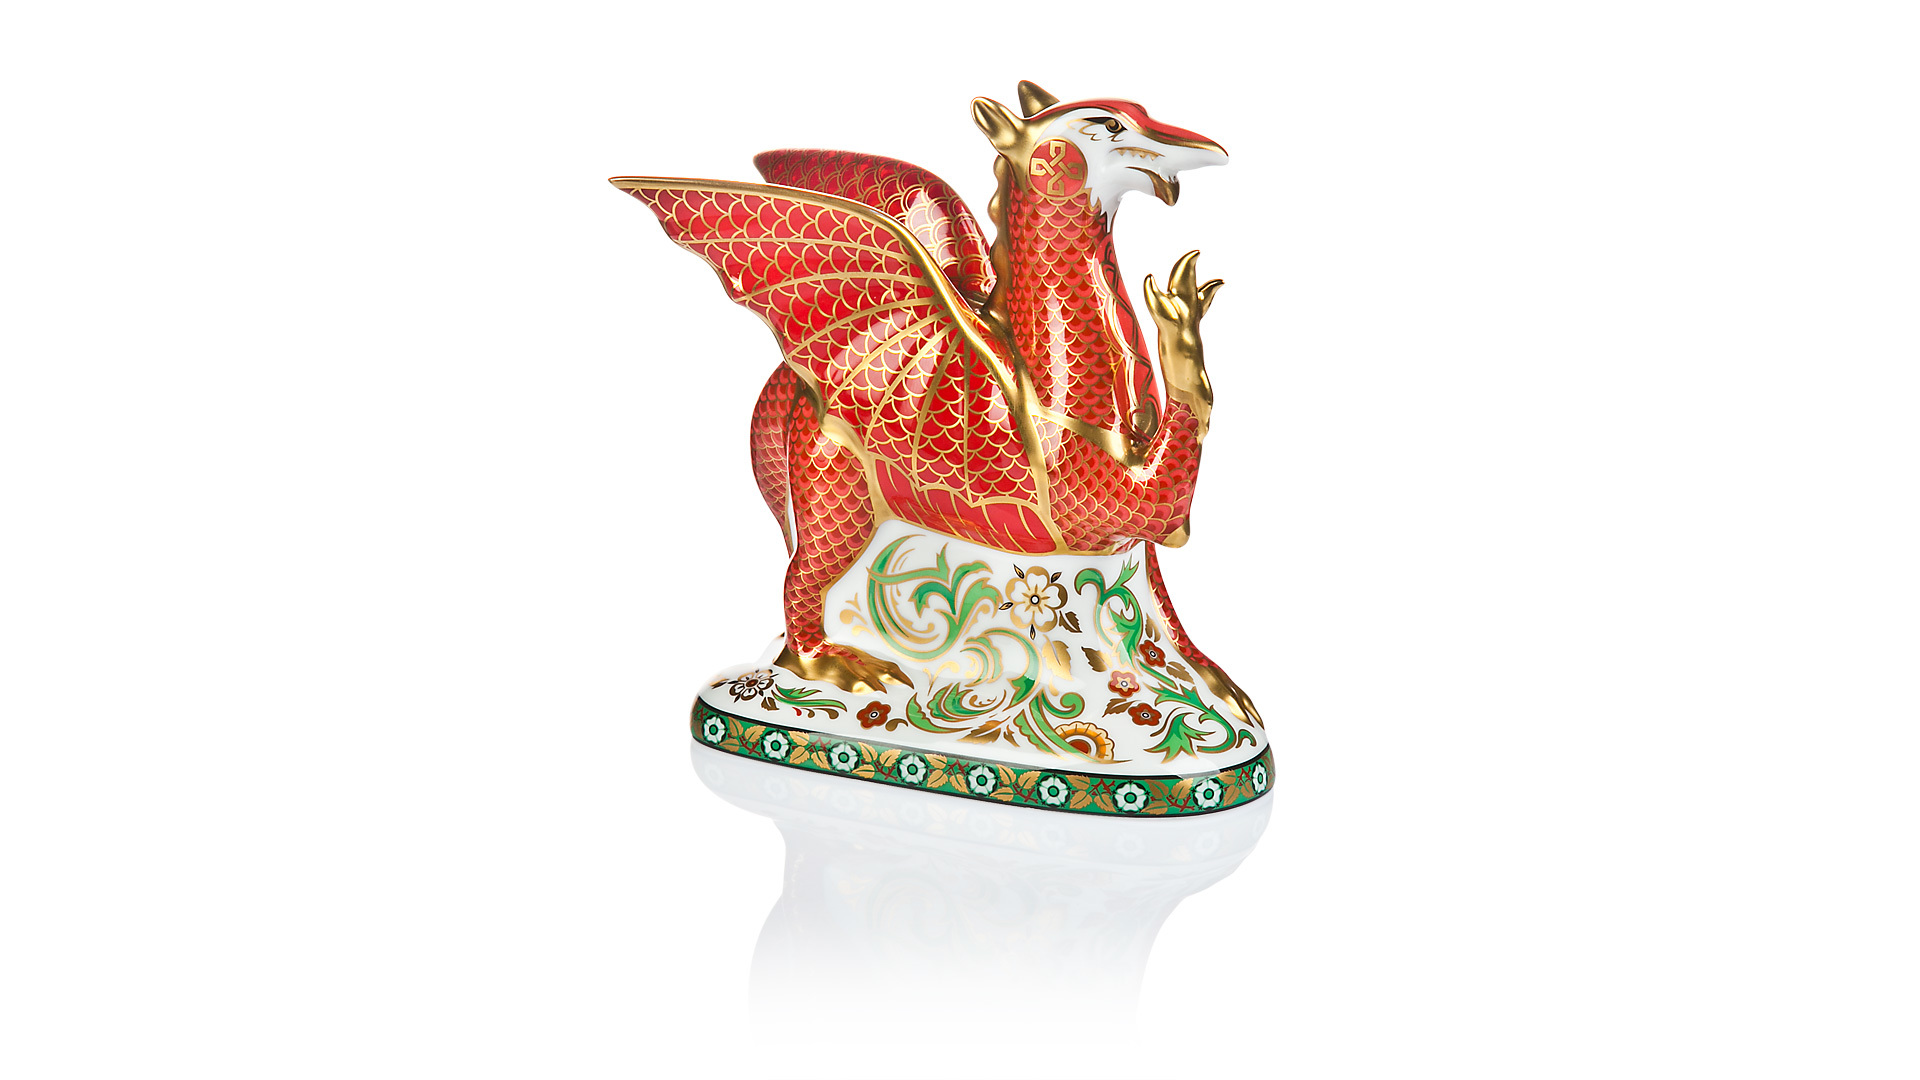 Пресс-папье Royal Crown Derby Валлийский дракон 15,5см(лим.950 экз)